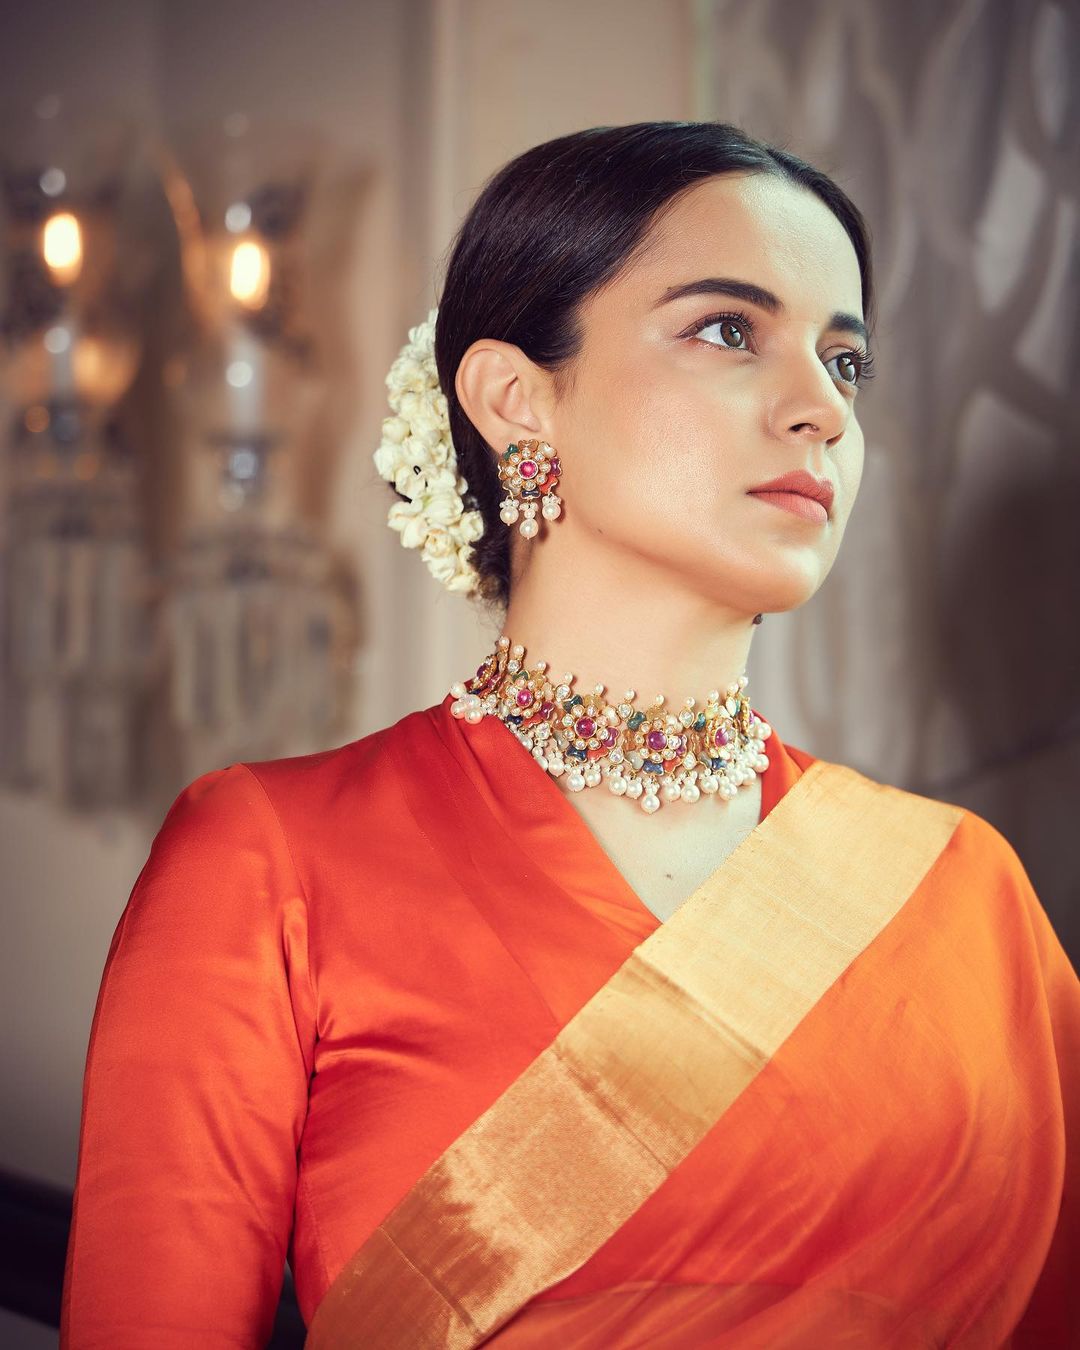 Kangana Ranaut pairs her orange saree with a choker and fresh flowers adorn her hair. 